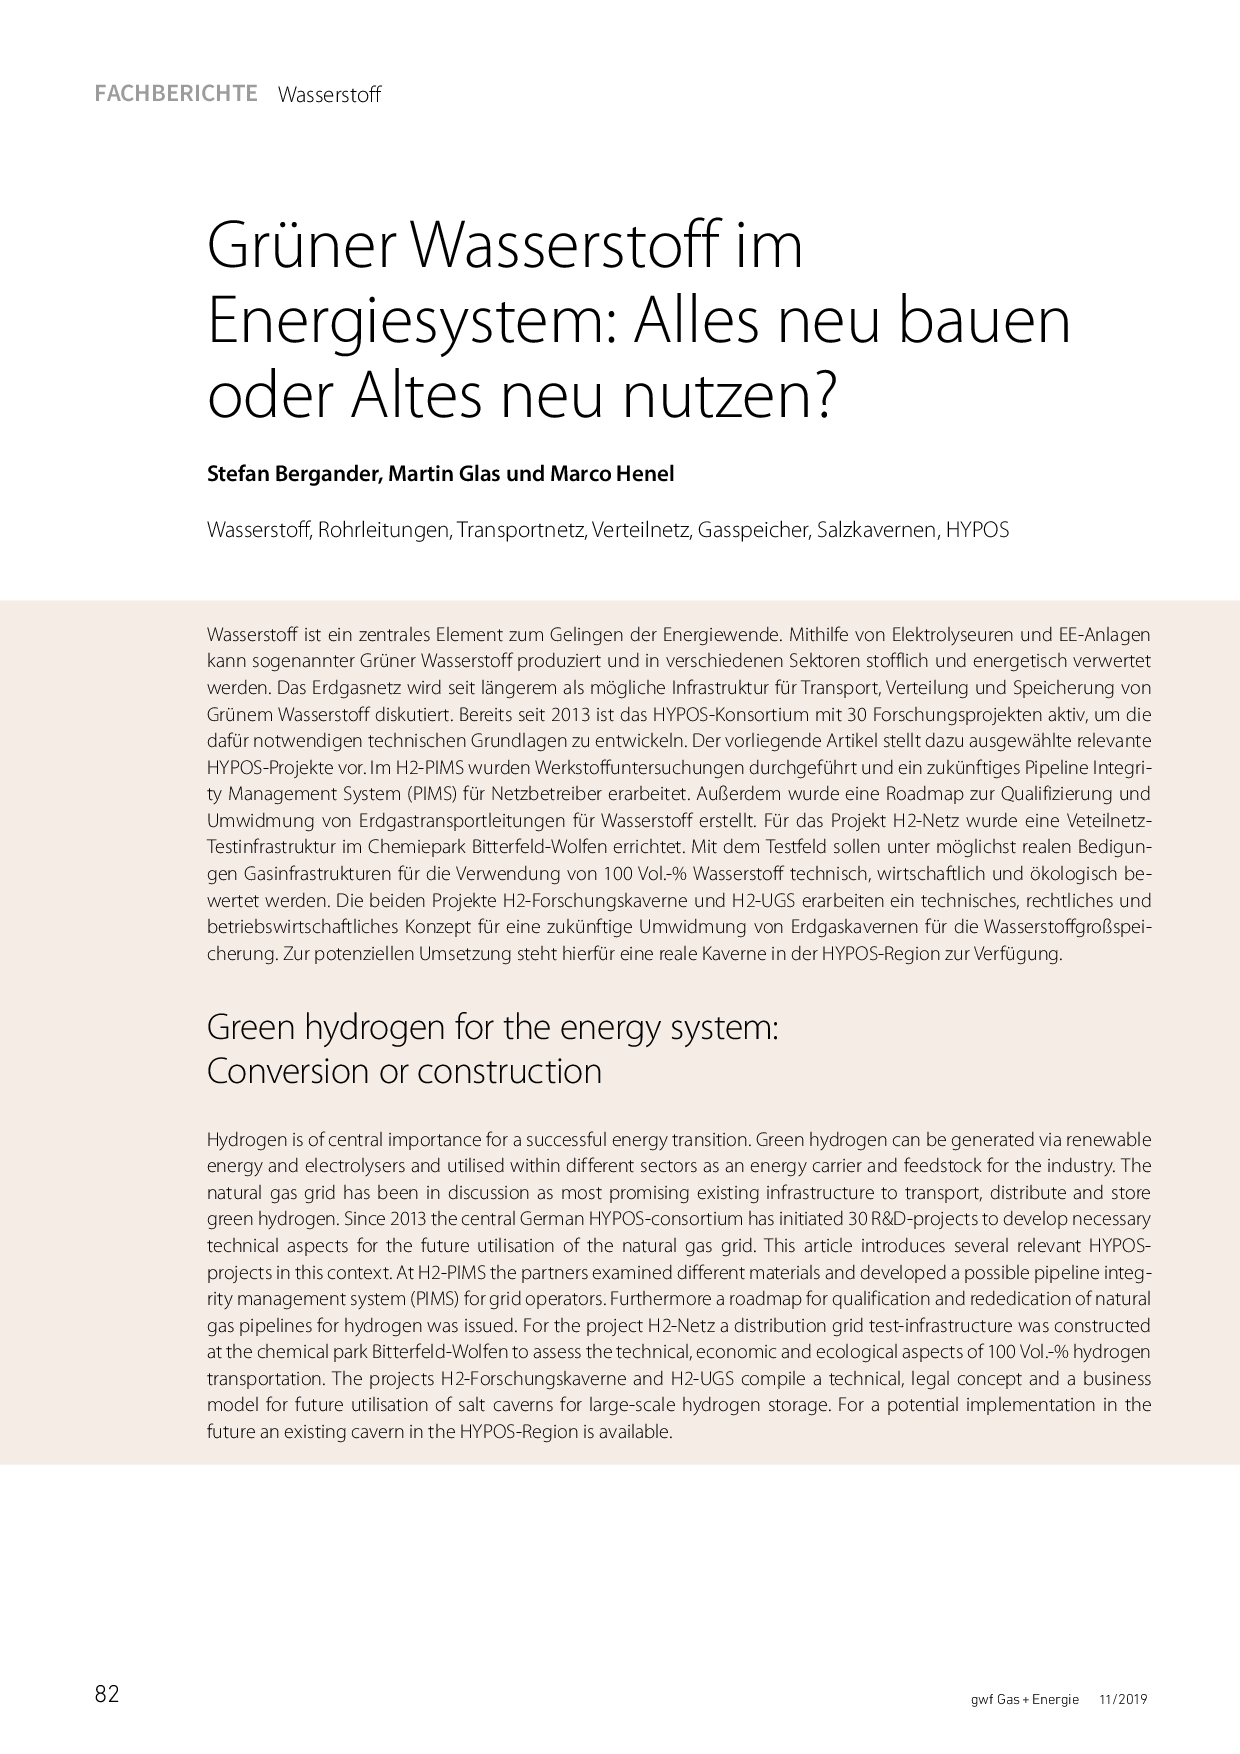 Grüner Wasserstoff im Energiesystem: Alles neu bauen oder Altes neu nutzen?